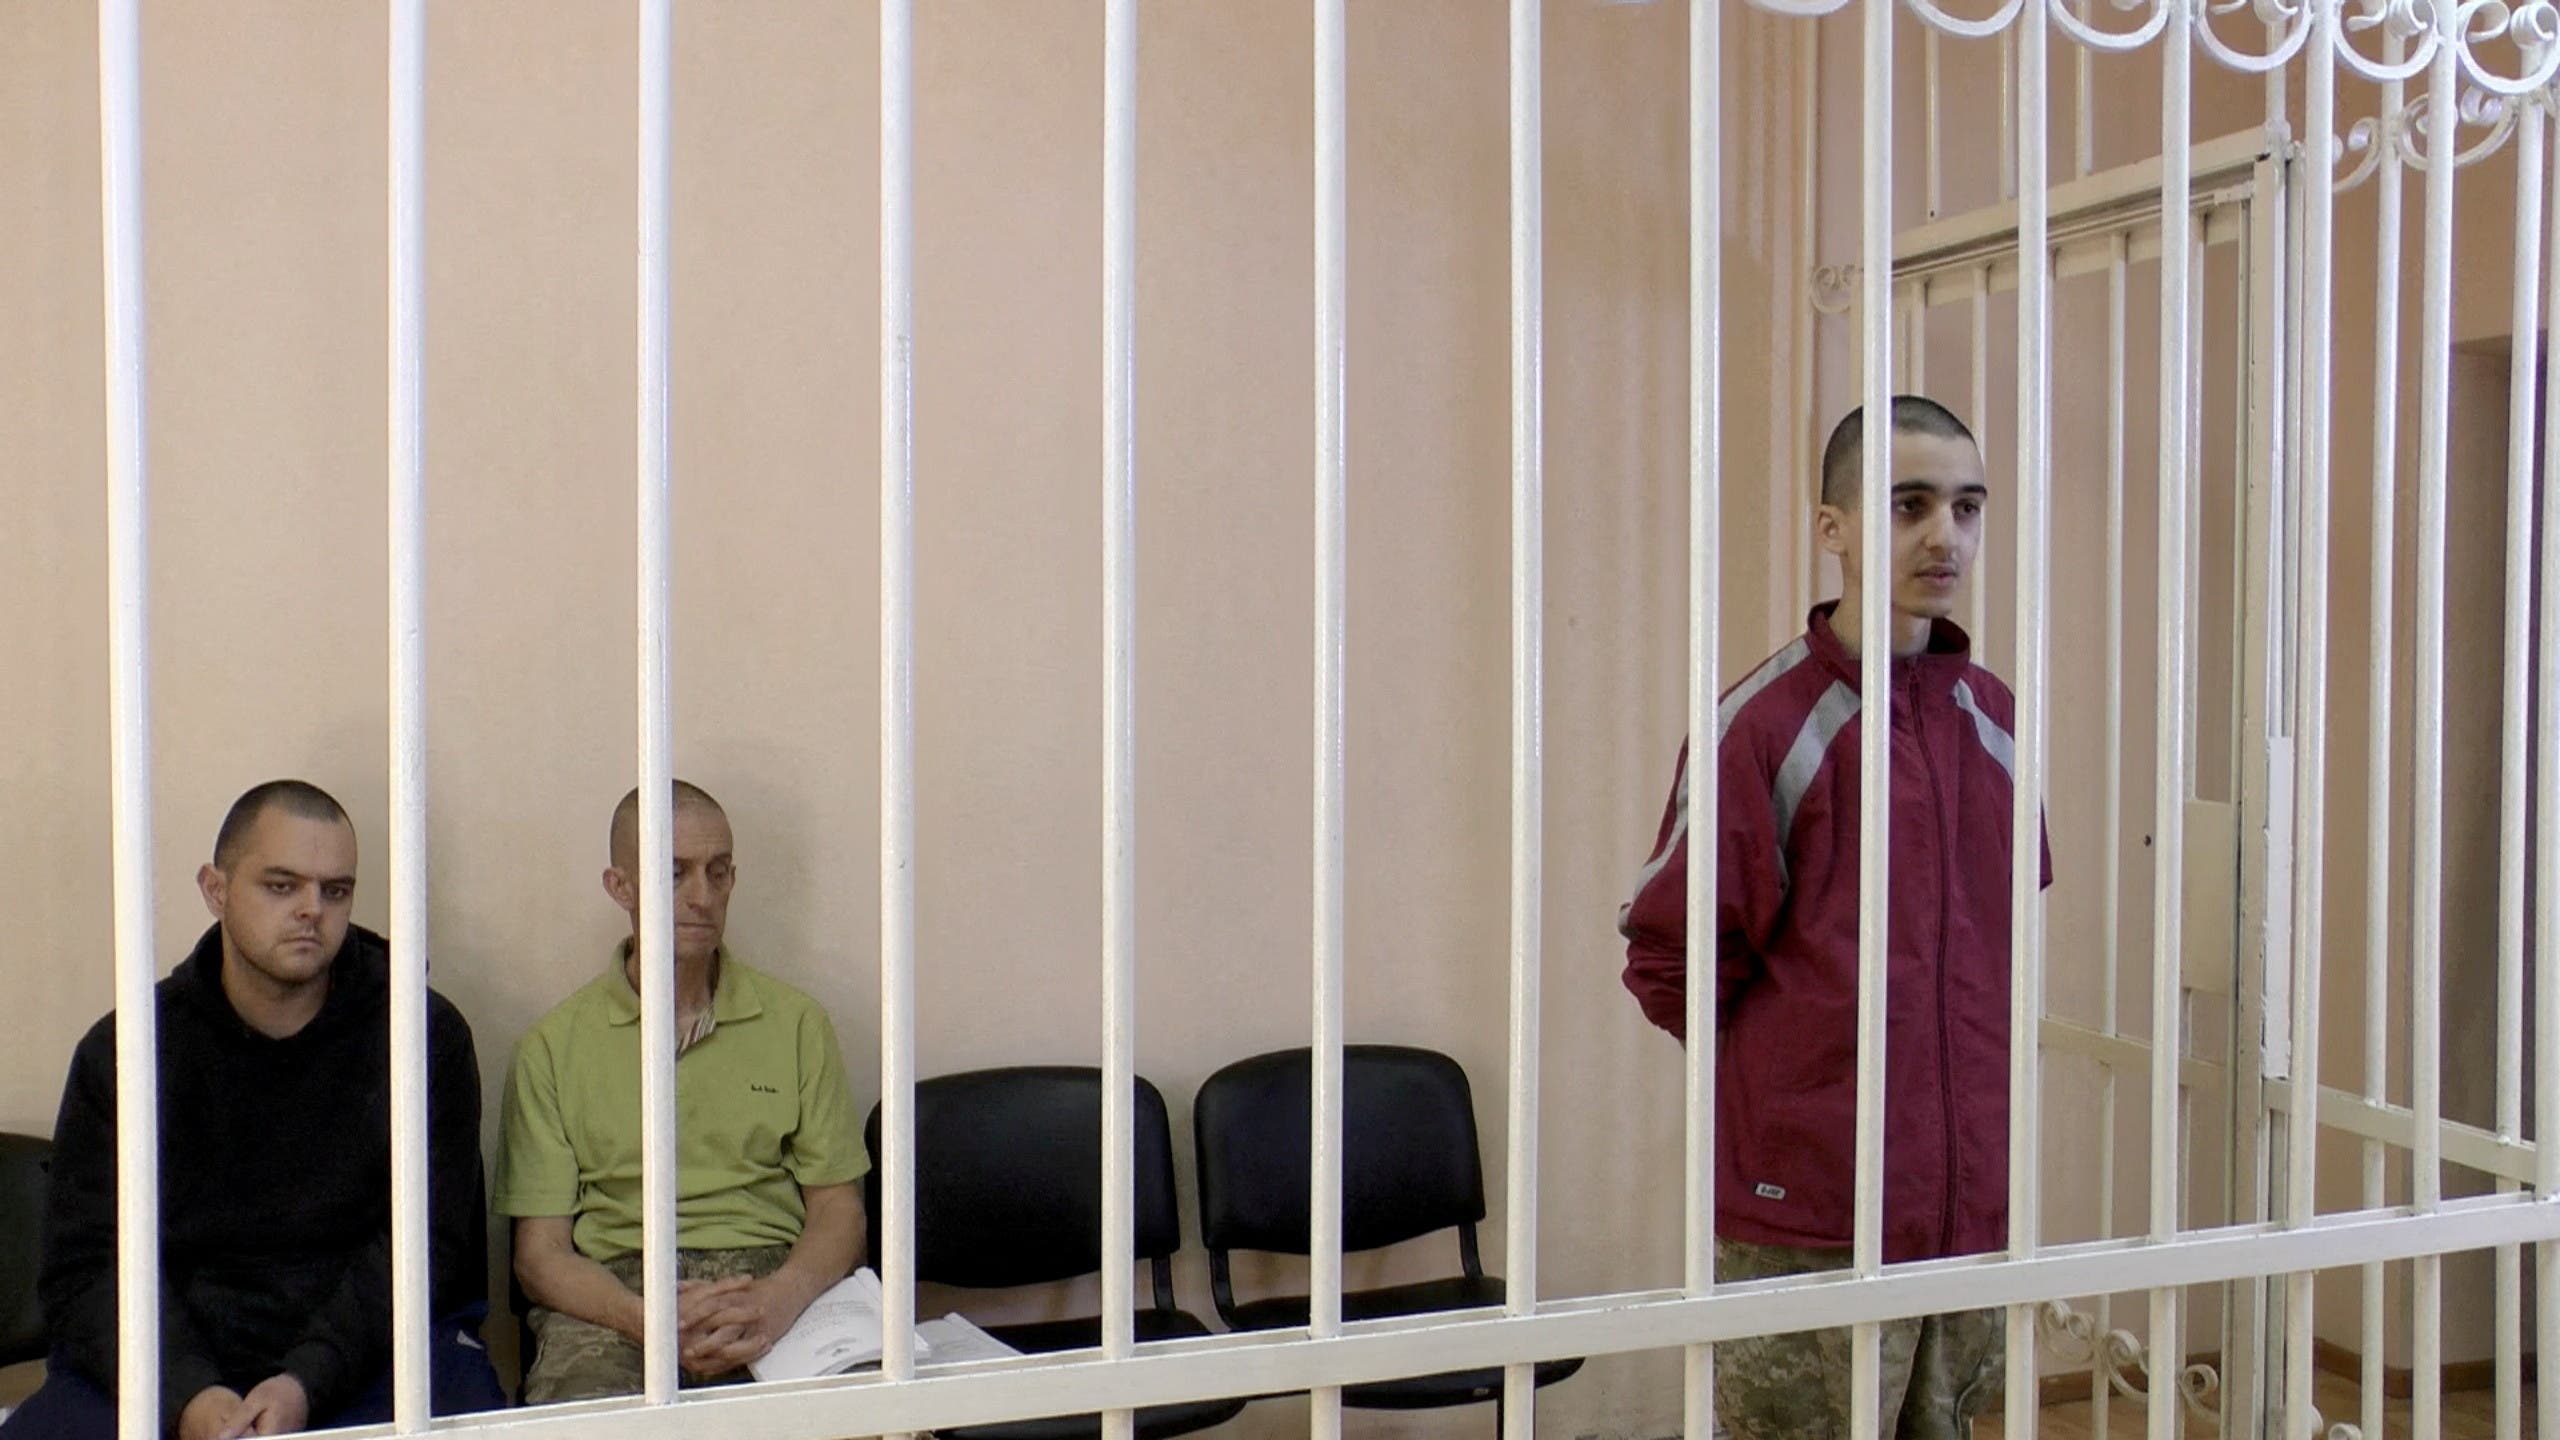 البريطانيان إيدن أسلين وشون بينر والمغربي إبراهيم سعدون في المحكمة